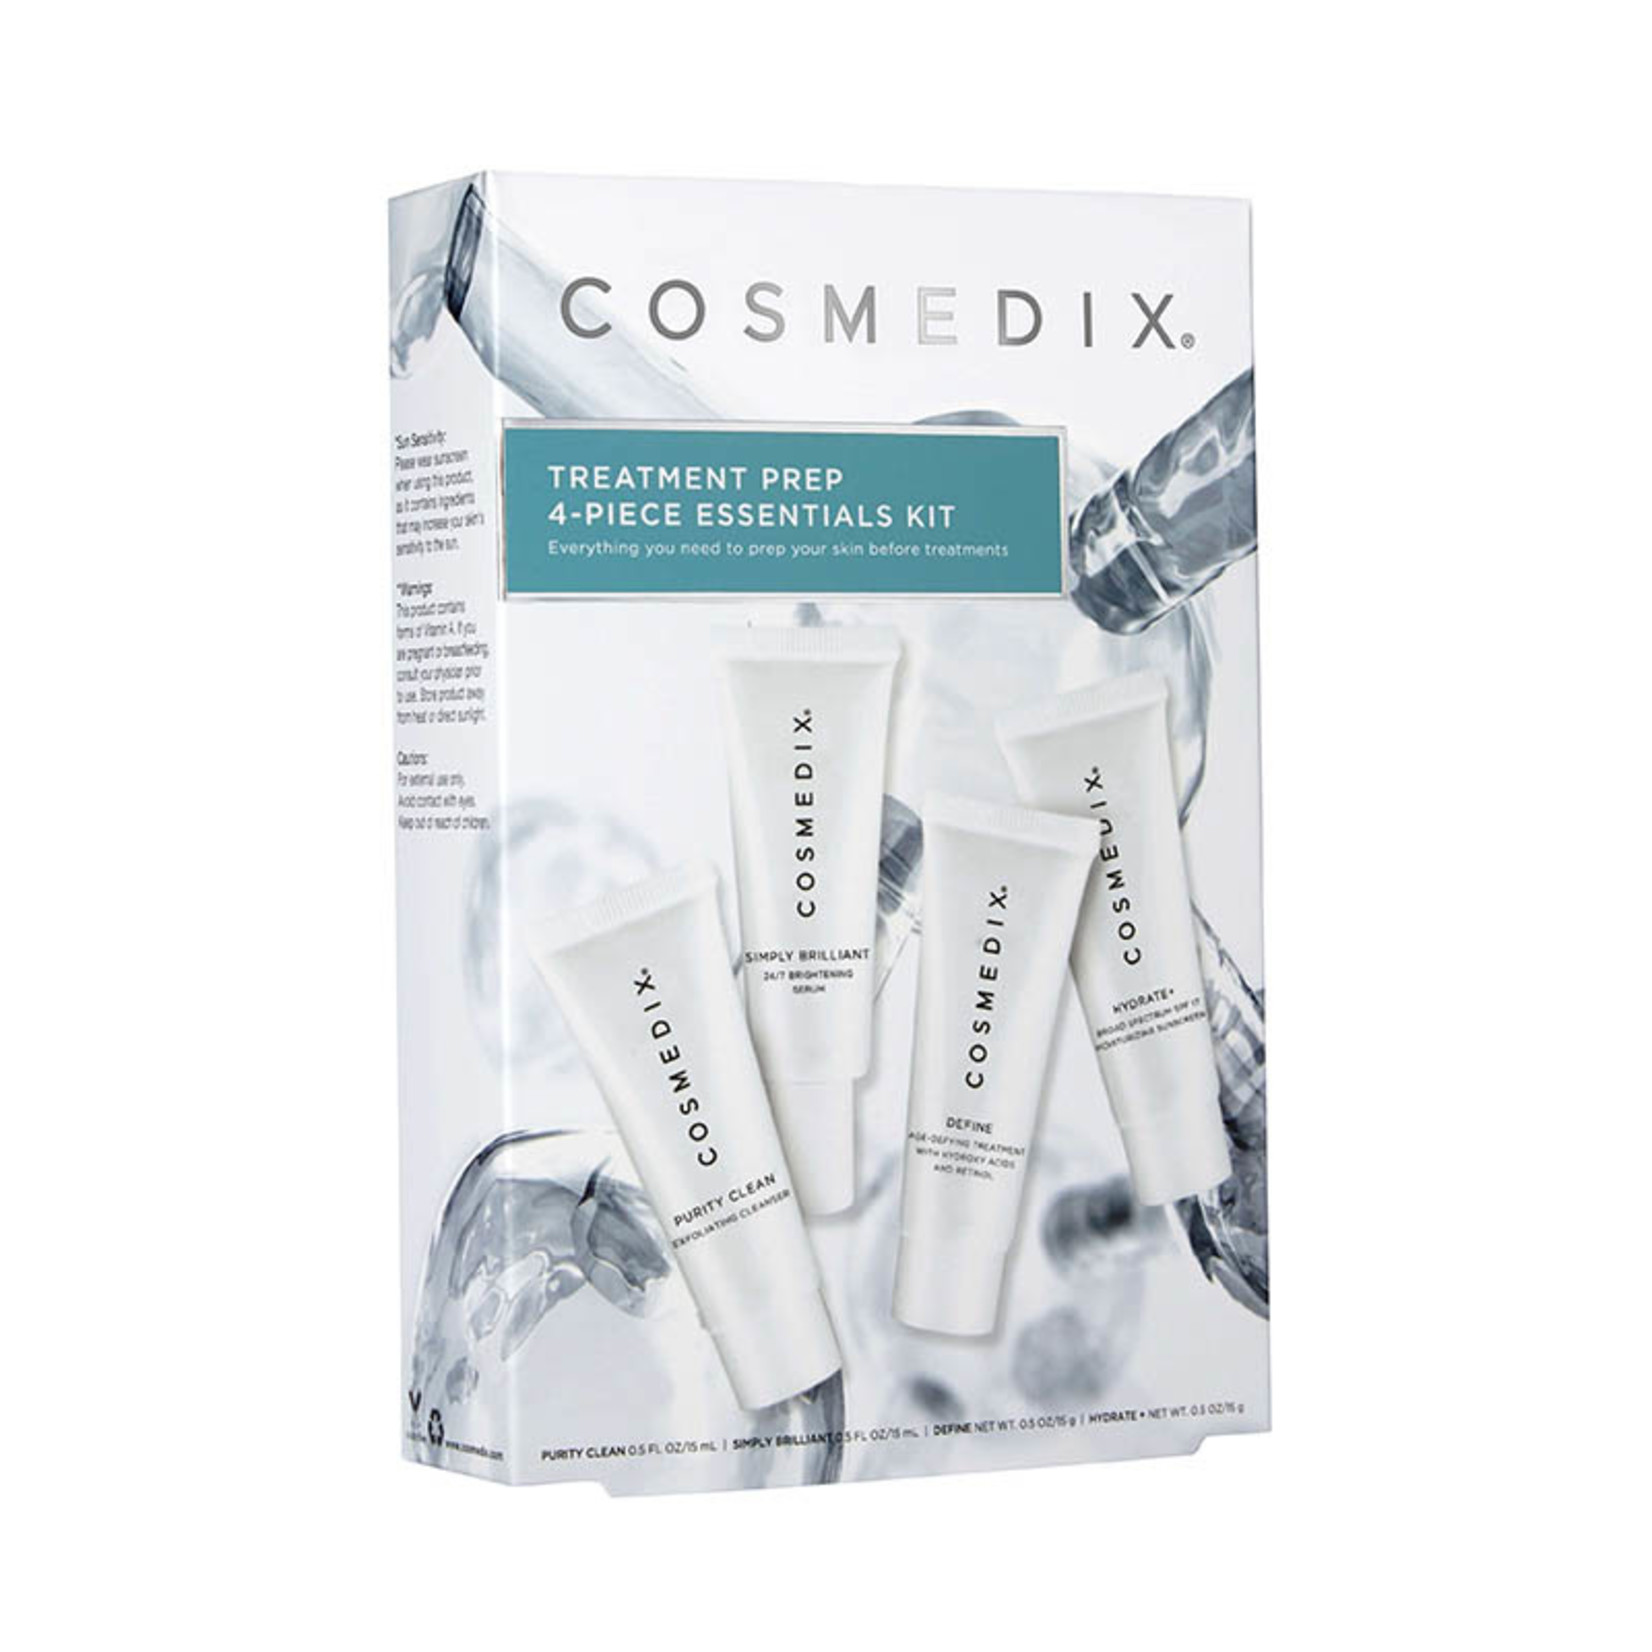 Cosmedix Treatment Prep Kit